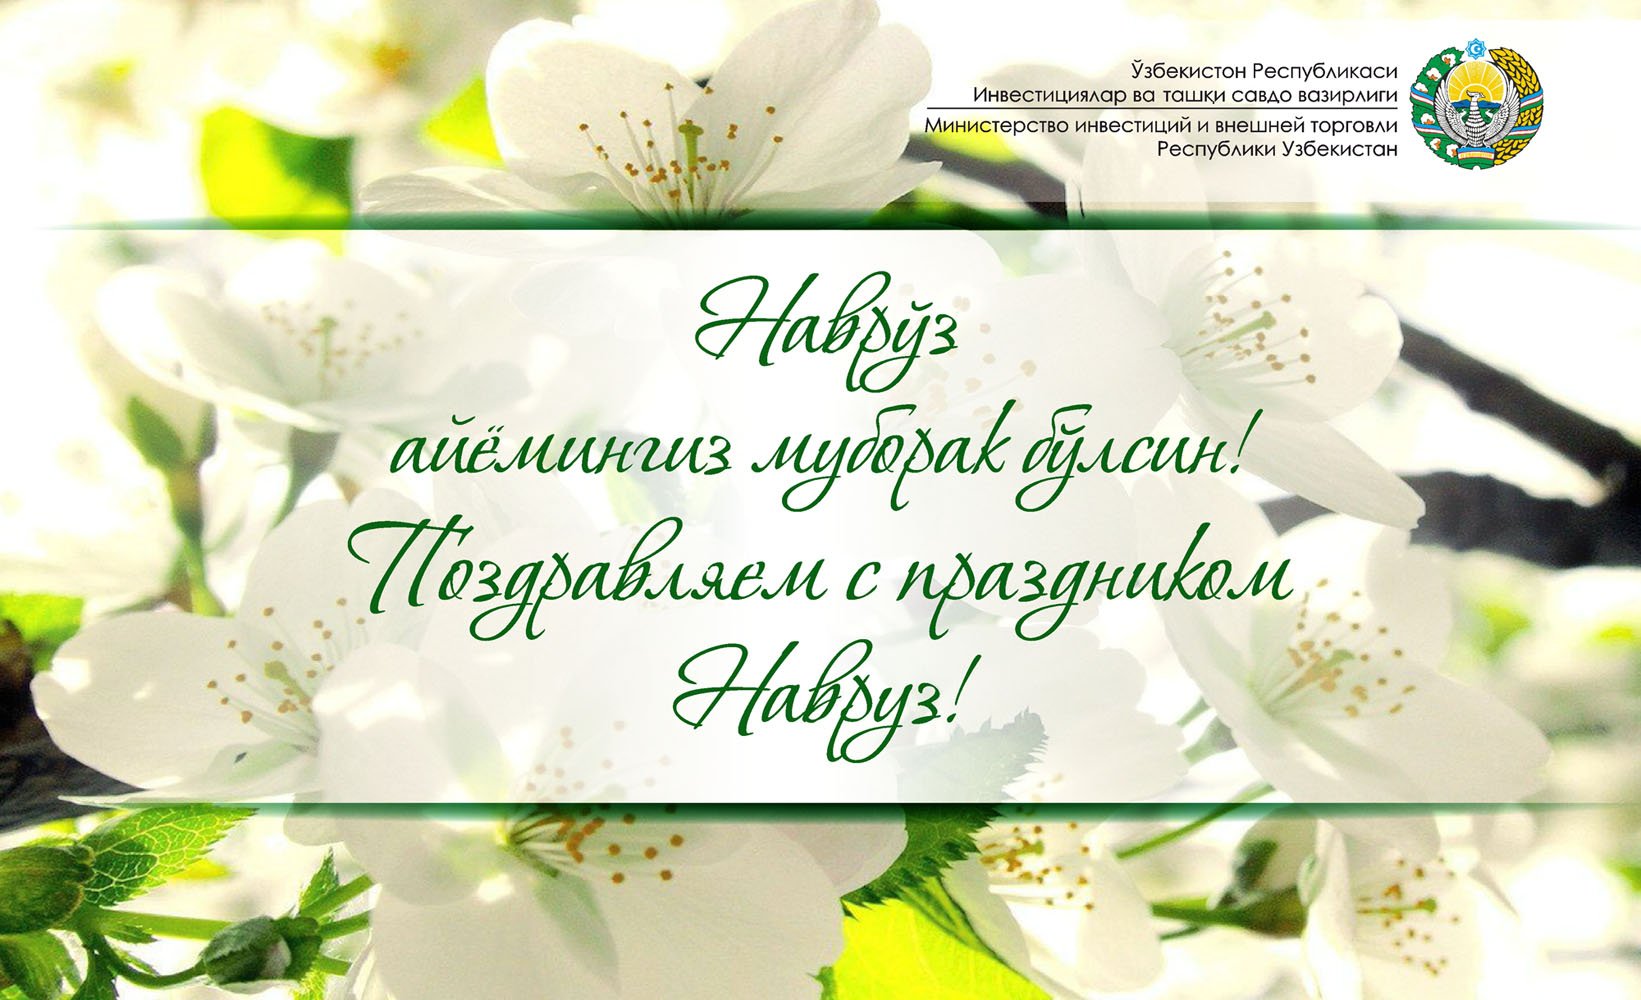 поздравления на таджикском языке с днем рождения